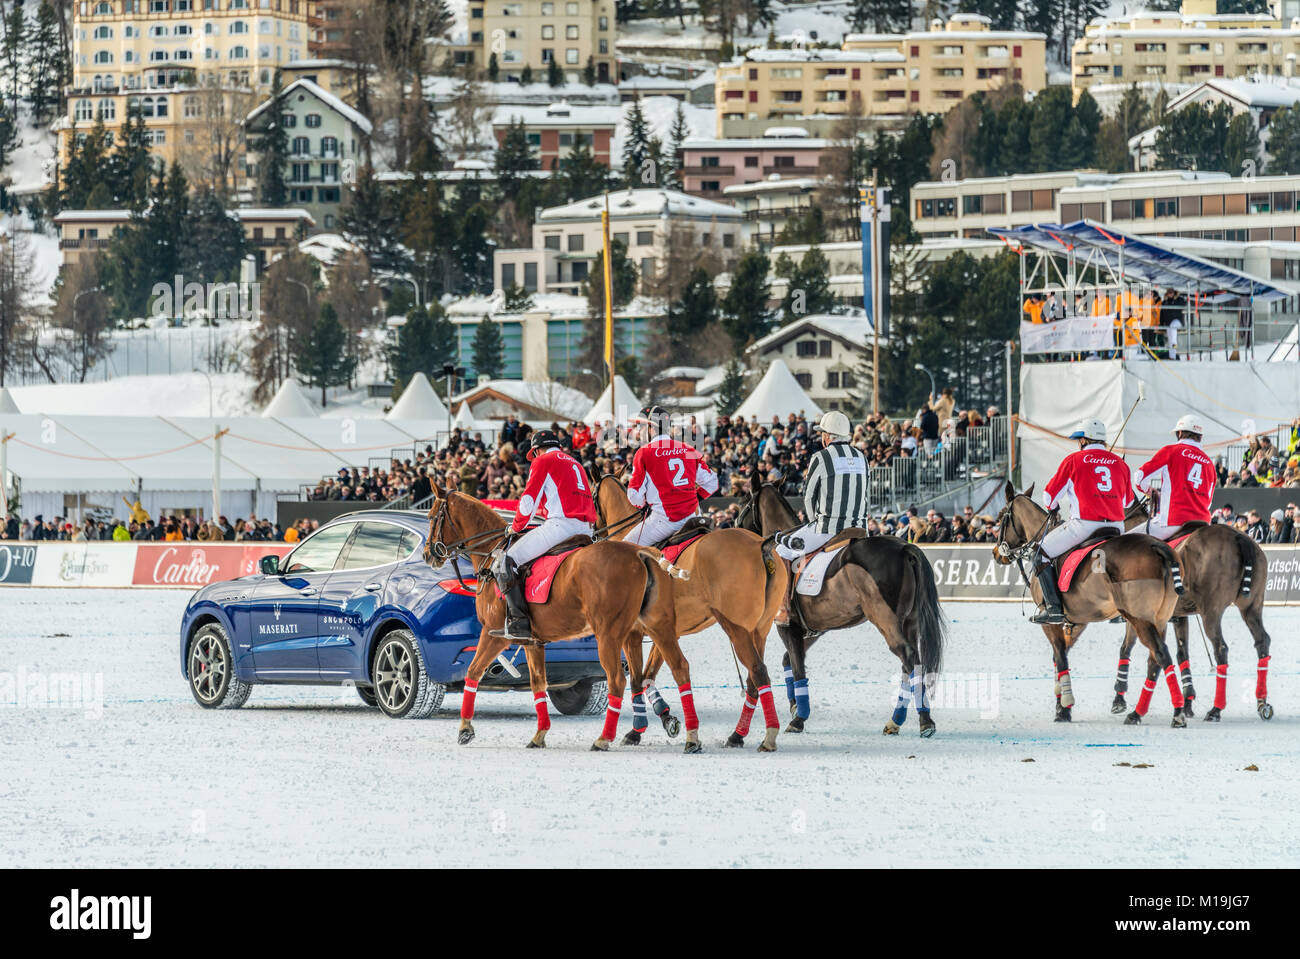 St.Moritz, Suisse. 28 janvier, 2018. Les membres de l'équipe 'Cartier' derrière une voiture Maserati promoteur durant la finale de la Coupe du Monde 2018 Snow Polo match le 28 janvier 2018 à St Moritz, Suisse Credit : travelbild/Alamy Live News Banque D'Images